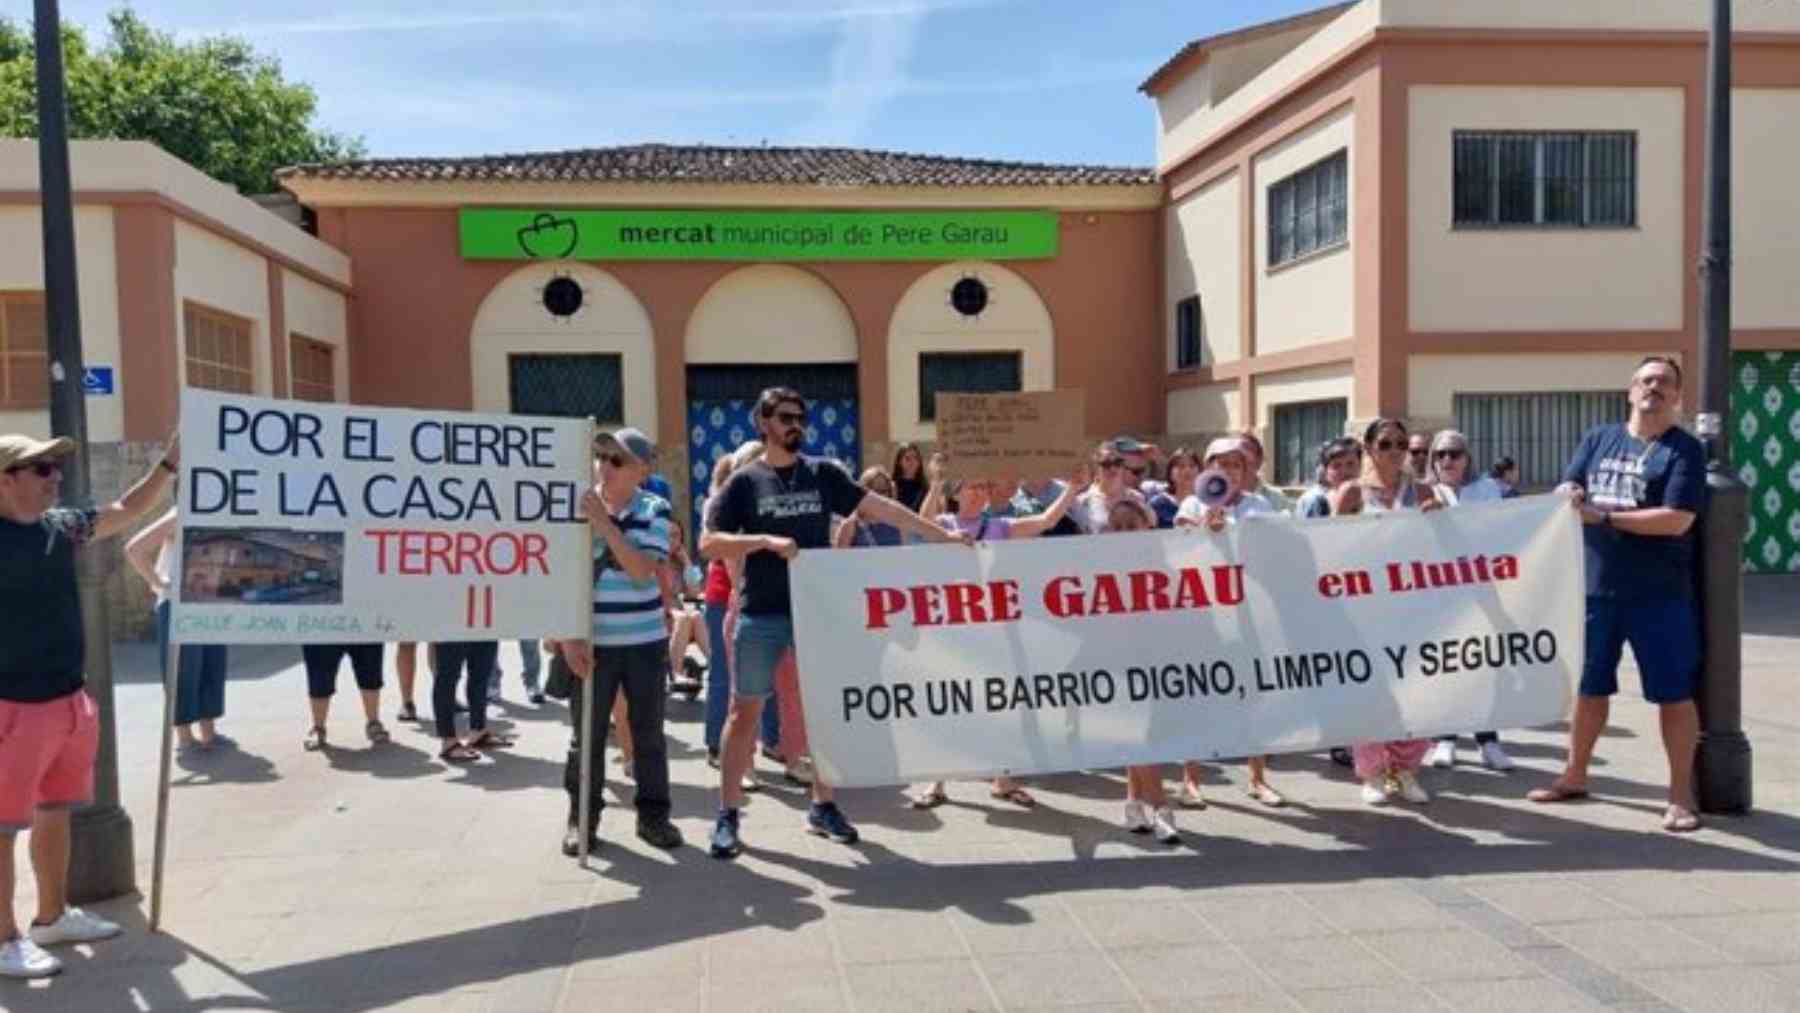 Manifestación vecinal contra la inseguridad ciudadana en el barrio de Pere Garau en Palma.